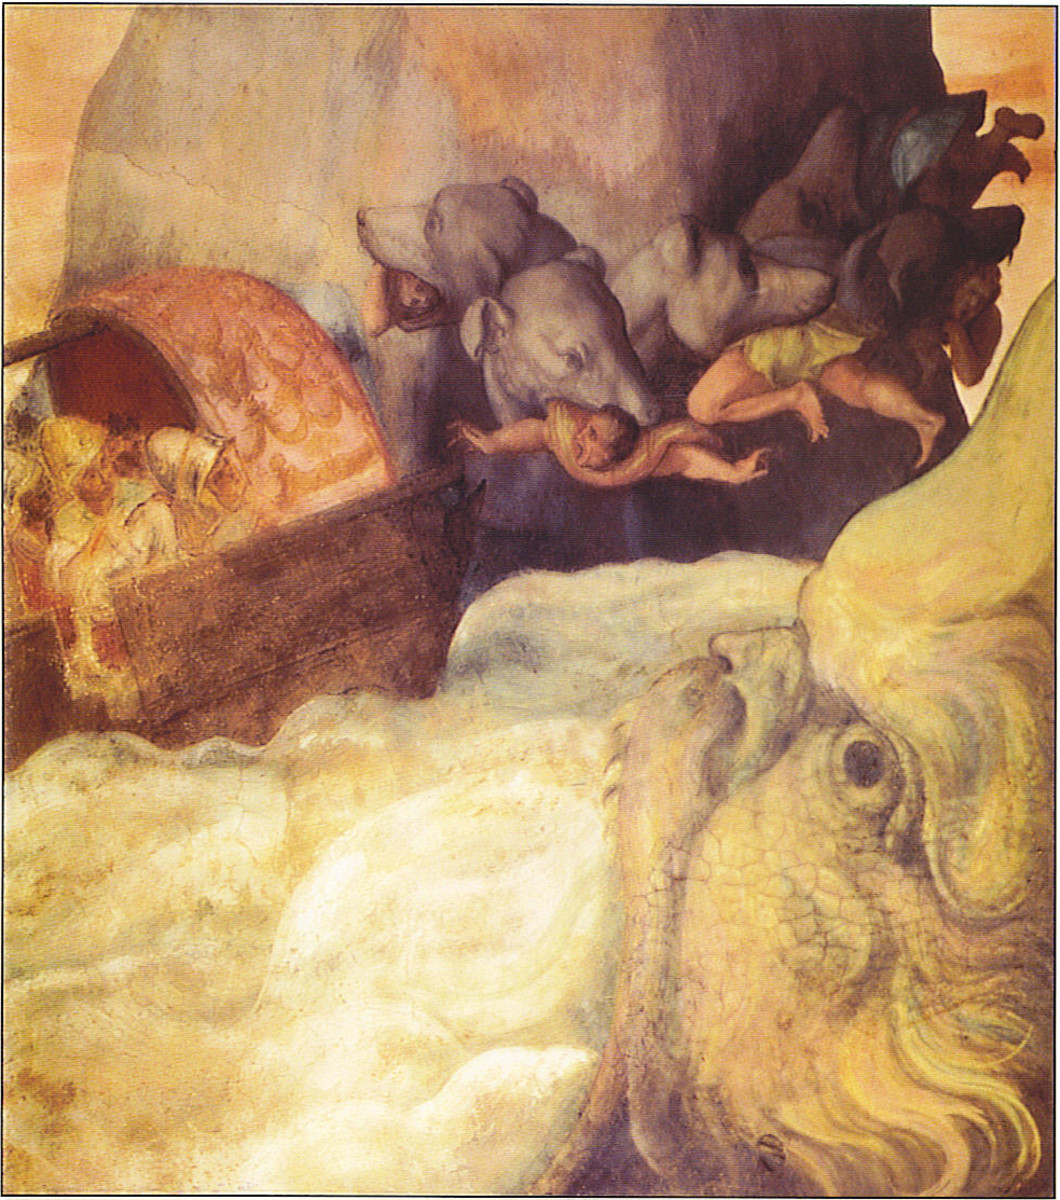 Итальянская фреска лодки Одиссея, проходящей между
Сцилла и Харибда (около 1575 г.) 